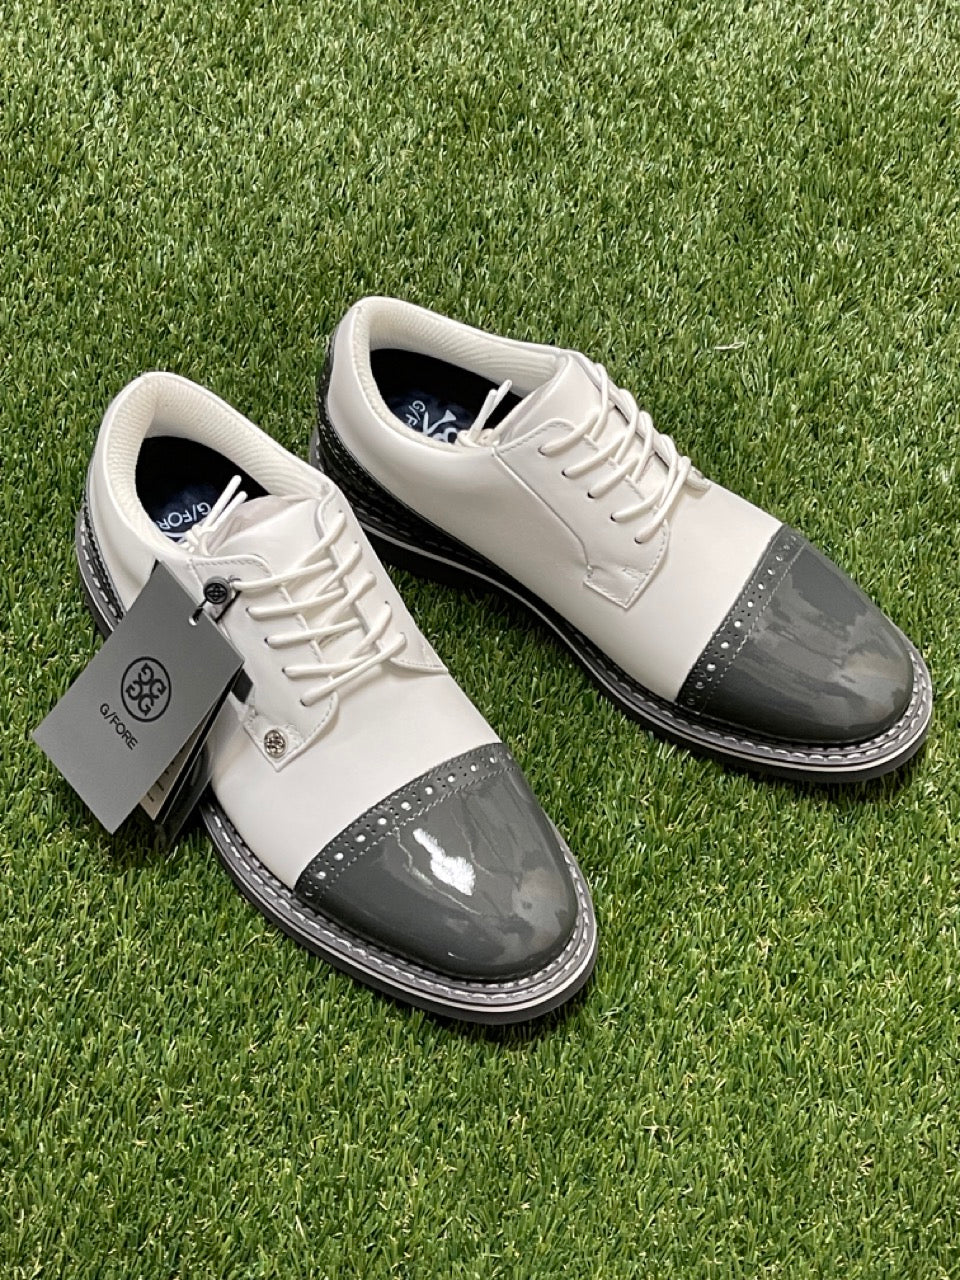 Gfore mens cap toe gallivanter golf shoes G4MS21EF04